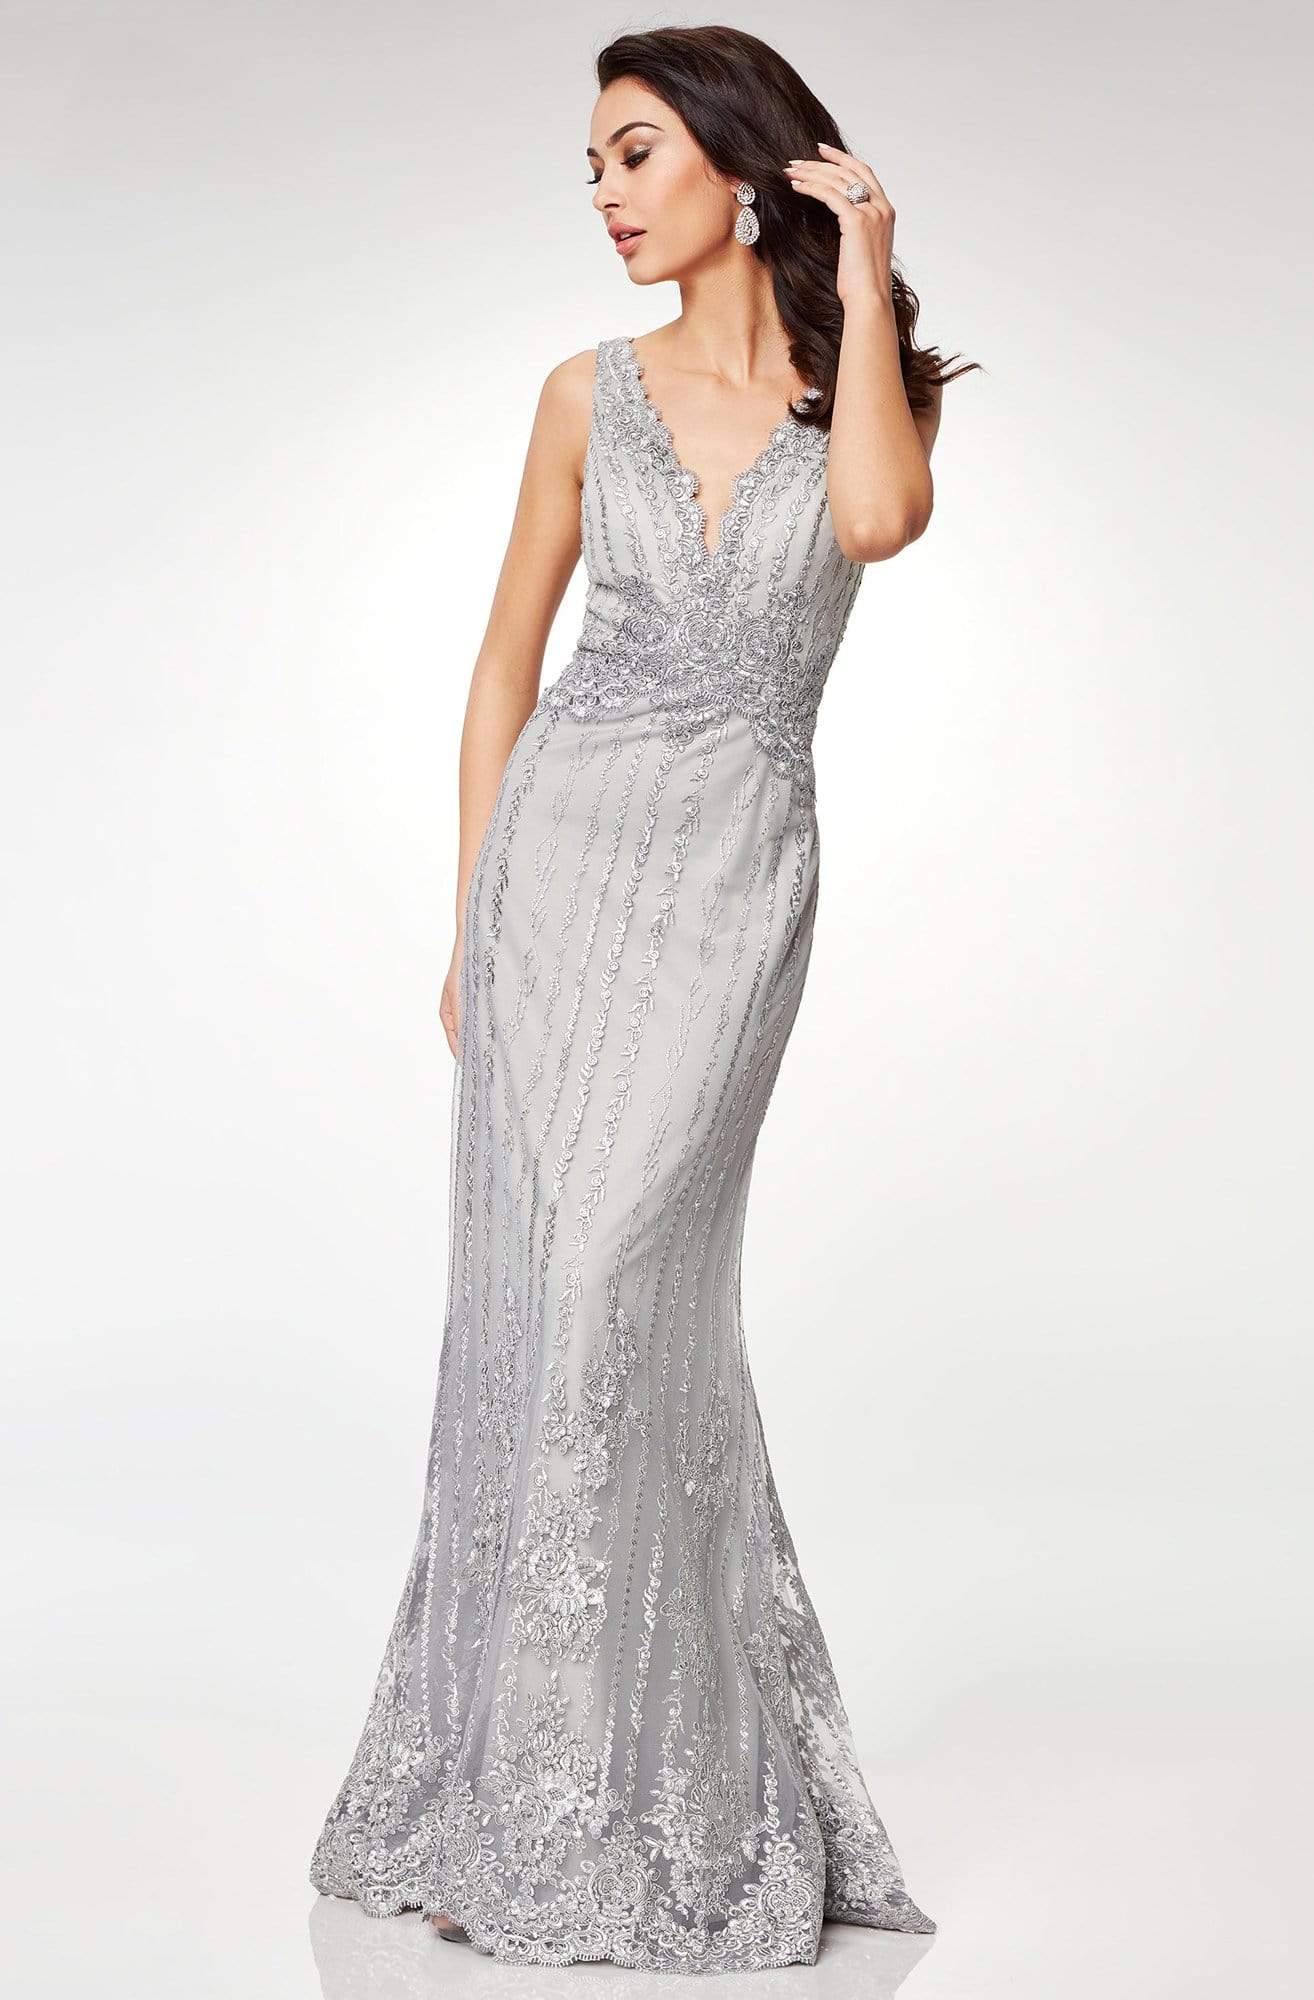 Clarisse - M6501 Adorned Lace Applique Long Sheath Gown